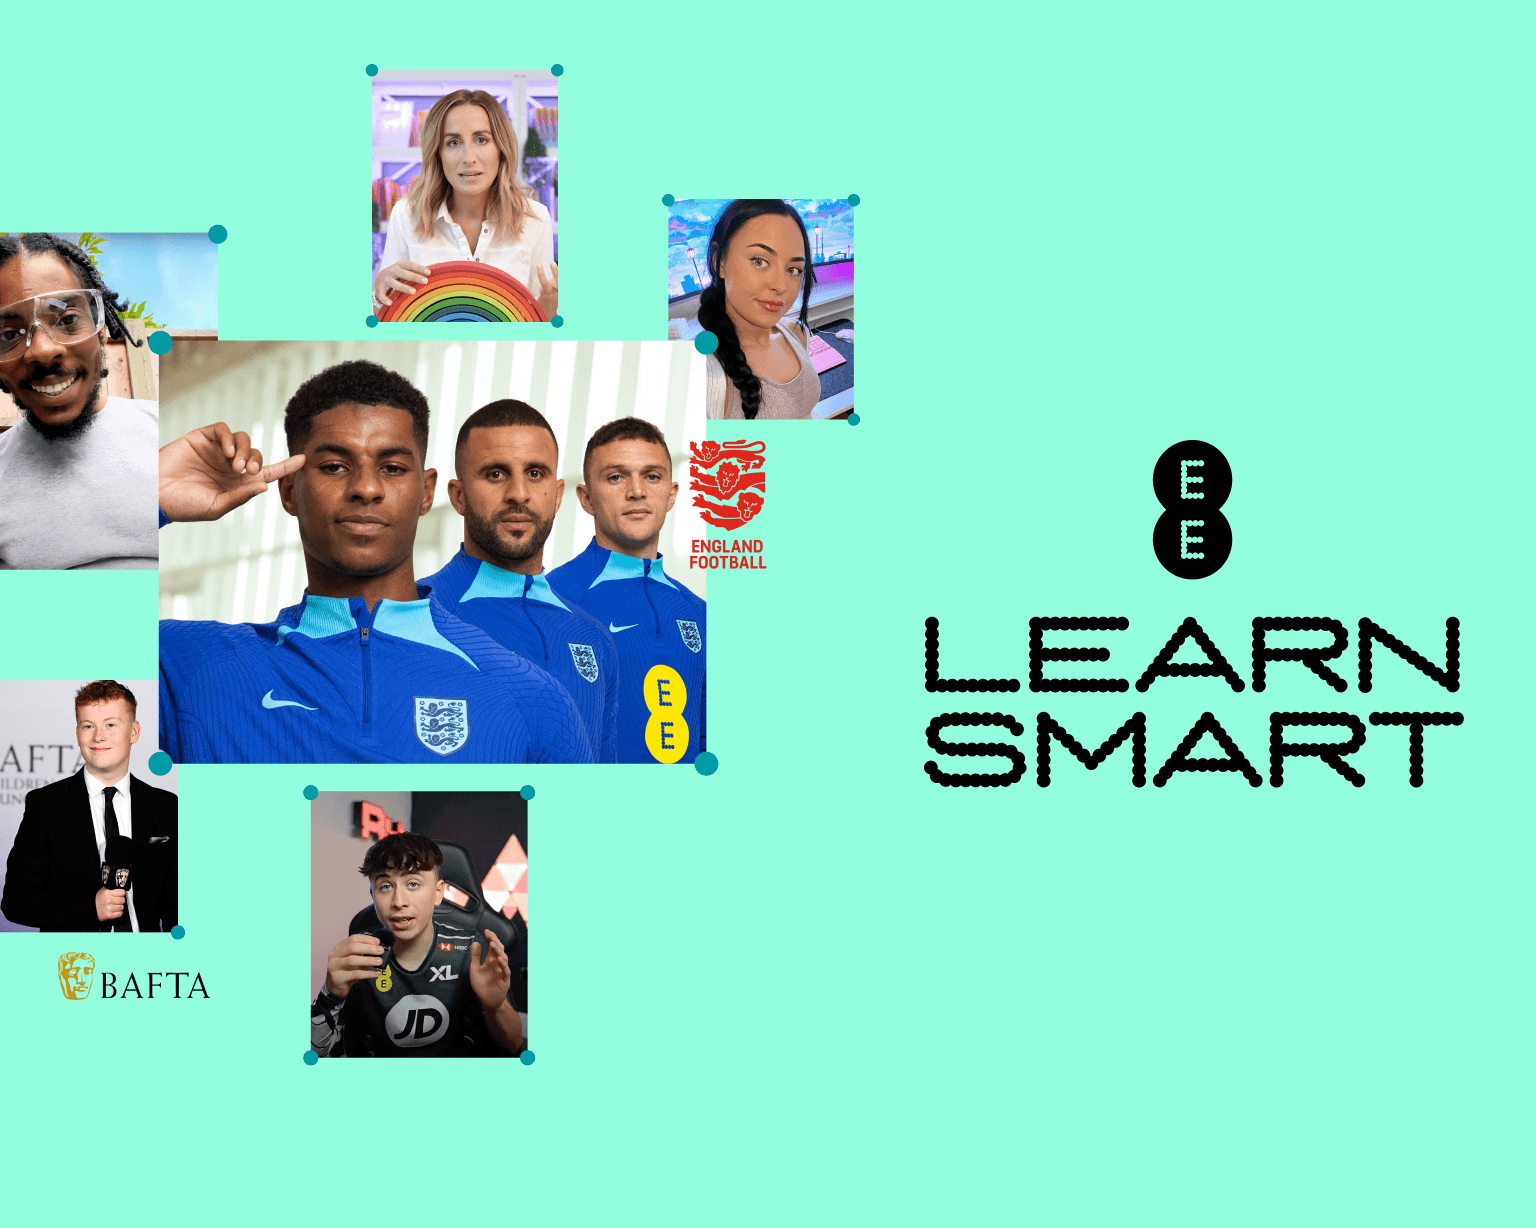 EE LearnSmart